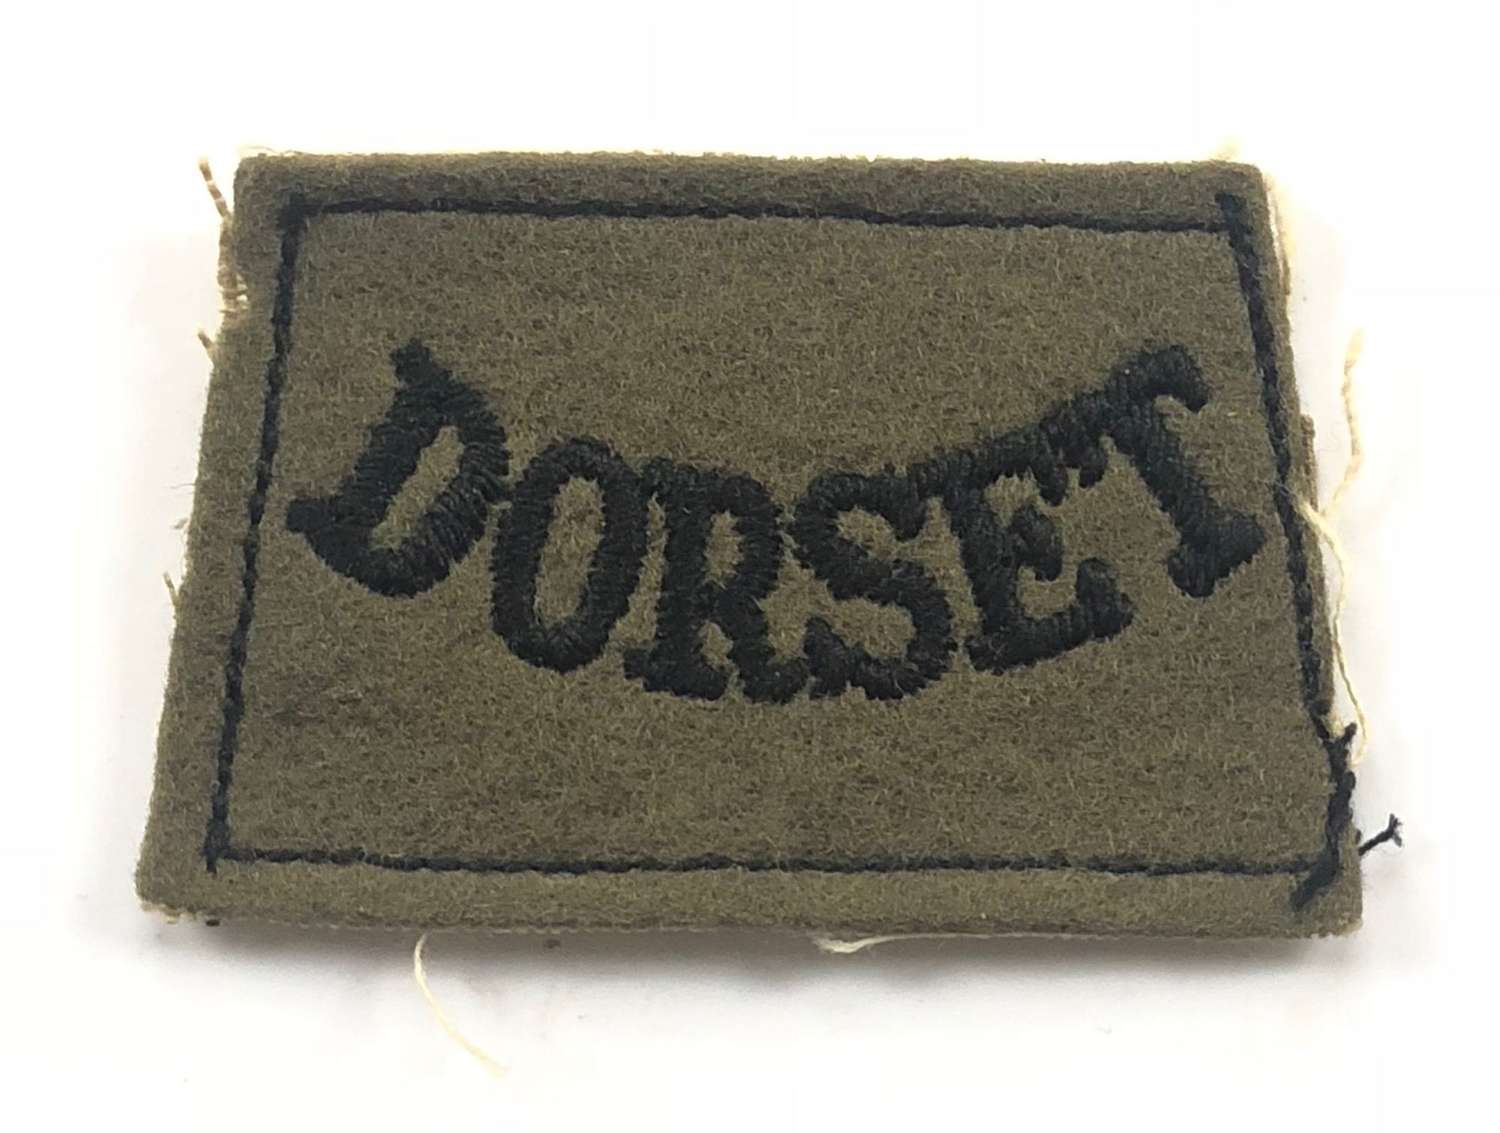 WW2 Dorset Regiment Slip on Shoulder Title.